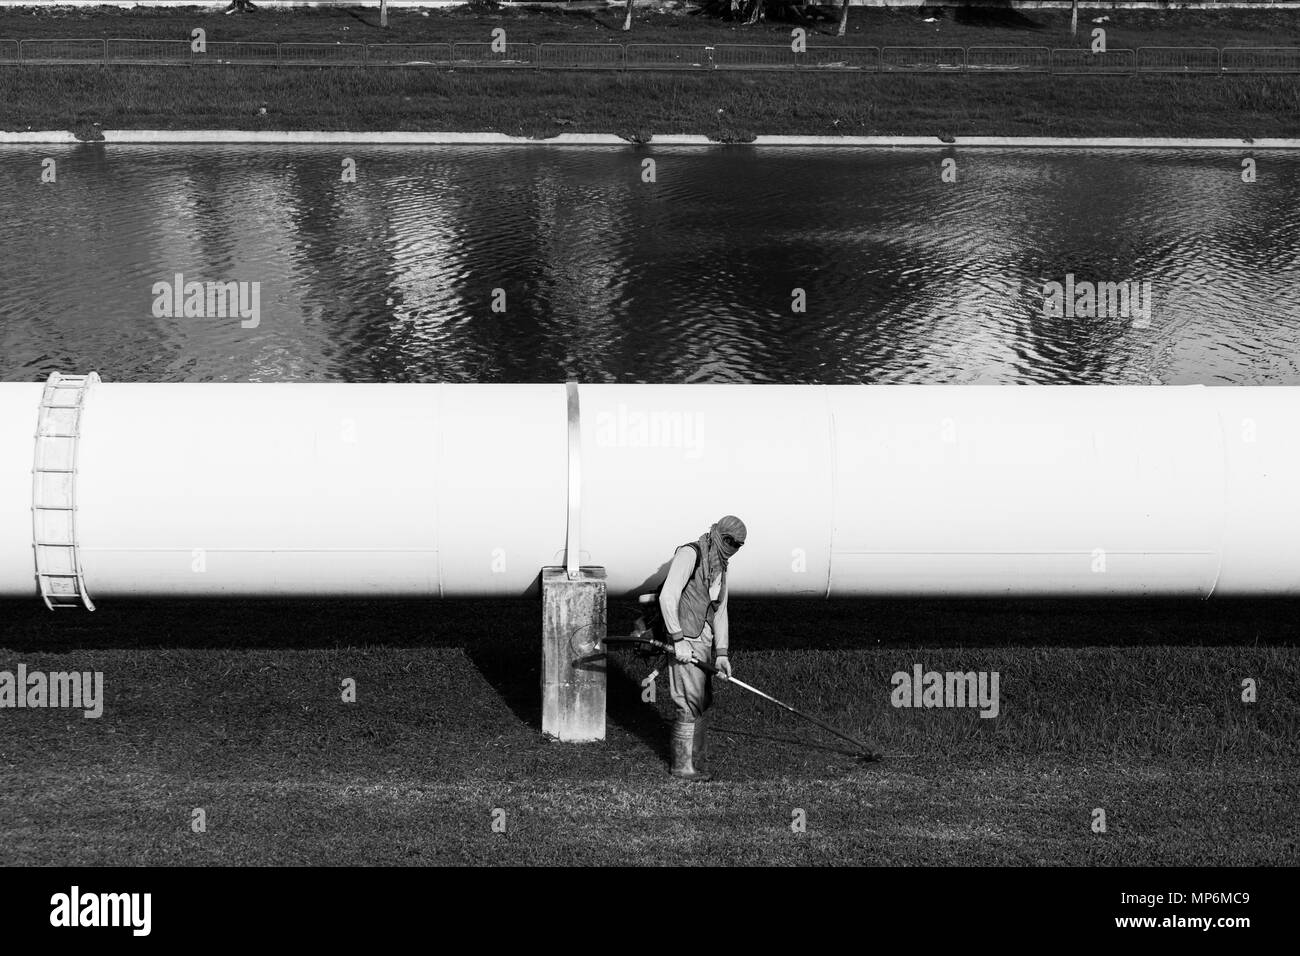 Un lavoratore qualificato che indossa indumenti protettivi, esegue la routine di manutenzione del taglio dell'erba utilizzando una macchina alimentata a benzina. Singapore. Foto Stock